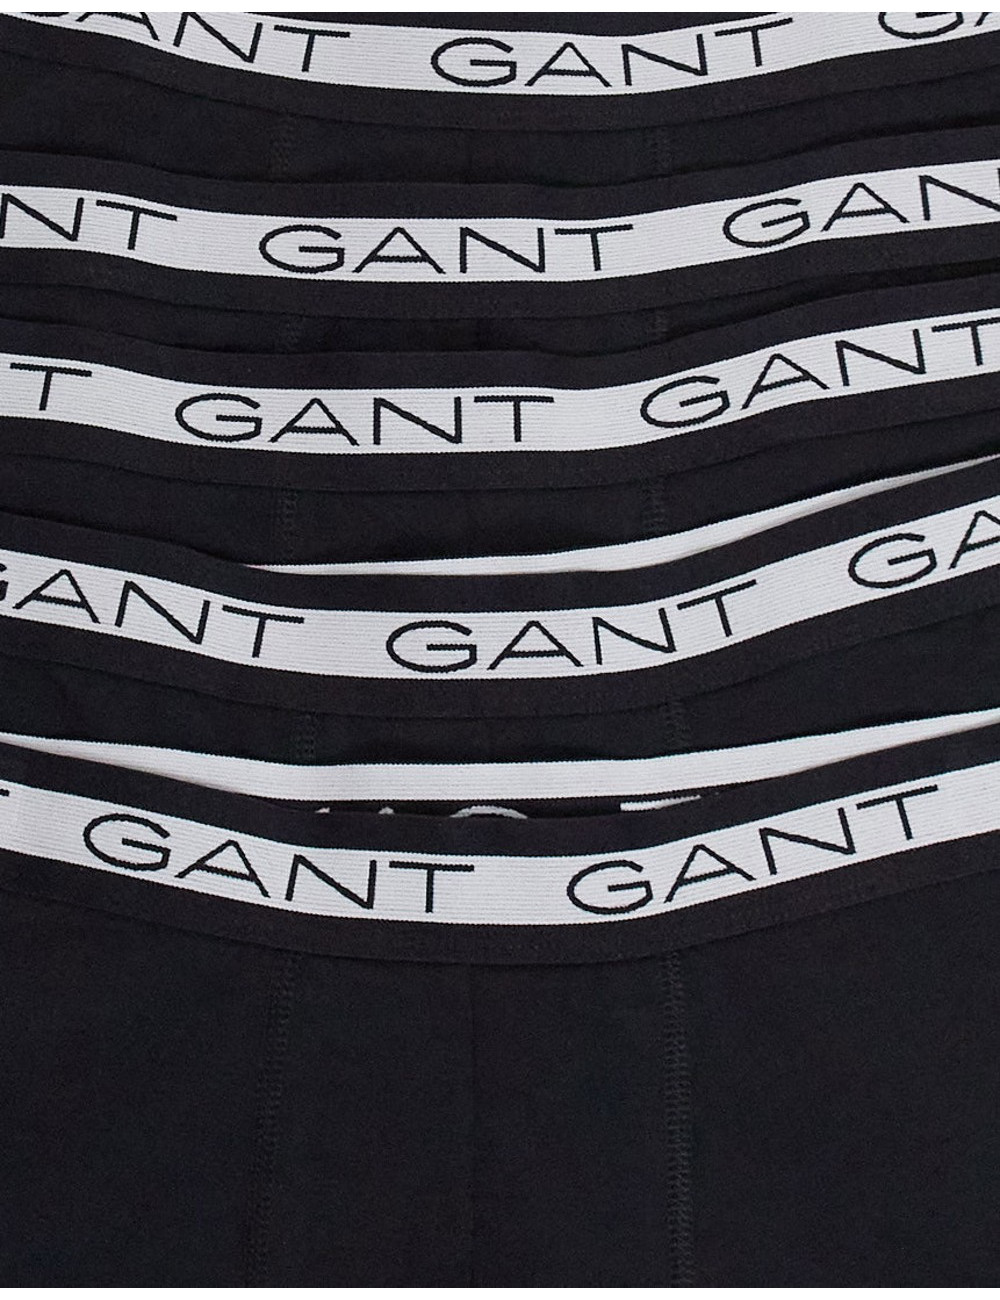 GANT 5 pack trunks in black...